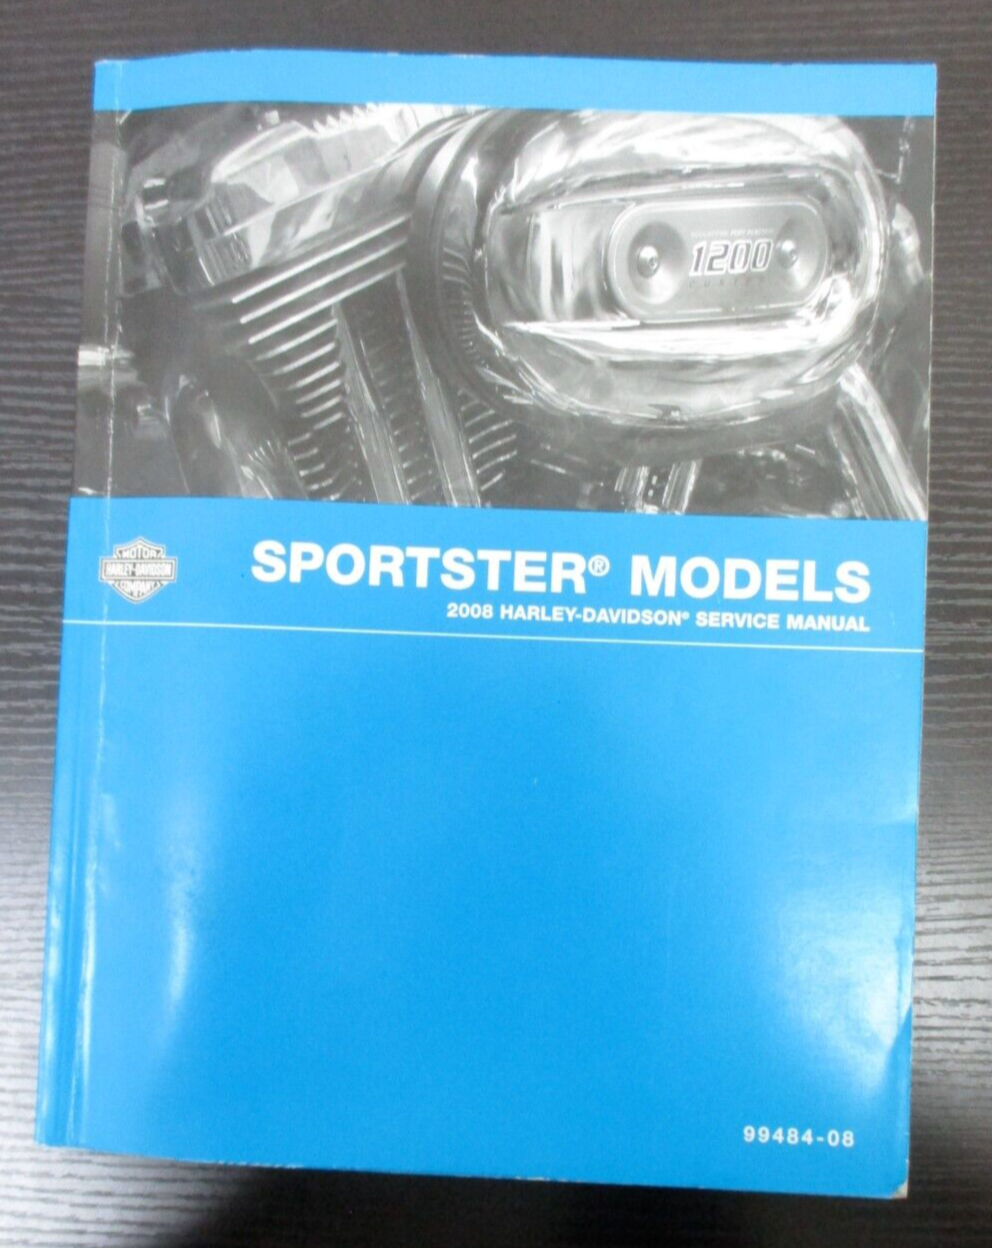 Harley-Davidson  Sportster Models 2008 Service Manual 99484-08